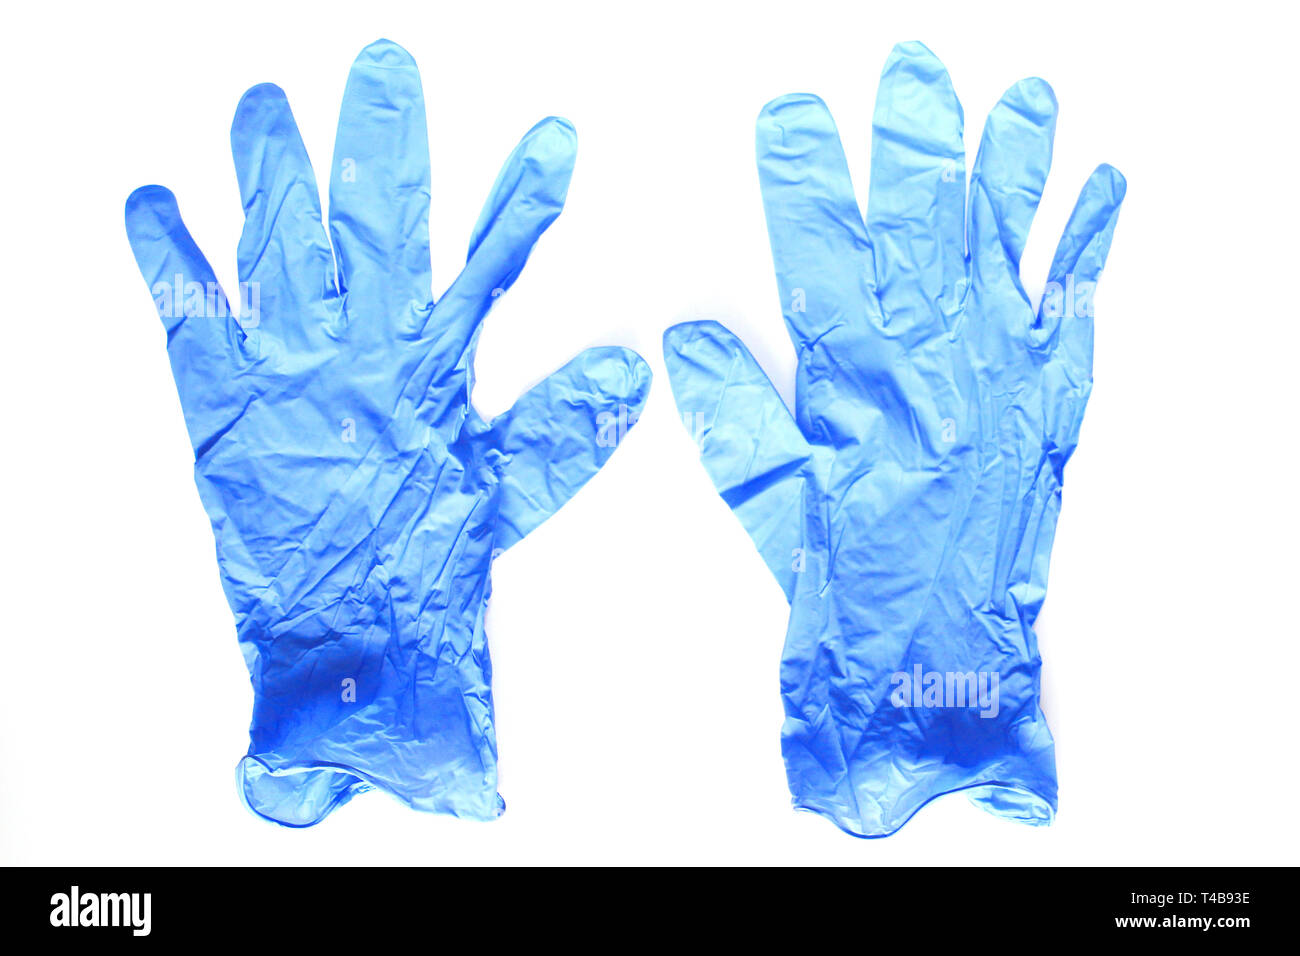 Blue guanti medicali. Lattice guanti sterili giacciono su uno sfondo bianco. Non ci sono persone. Foto Stock